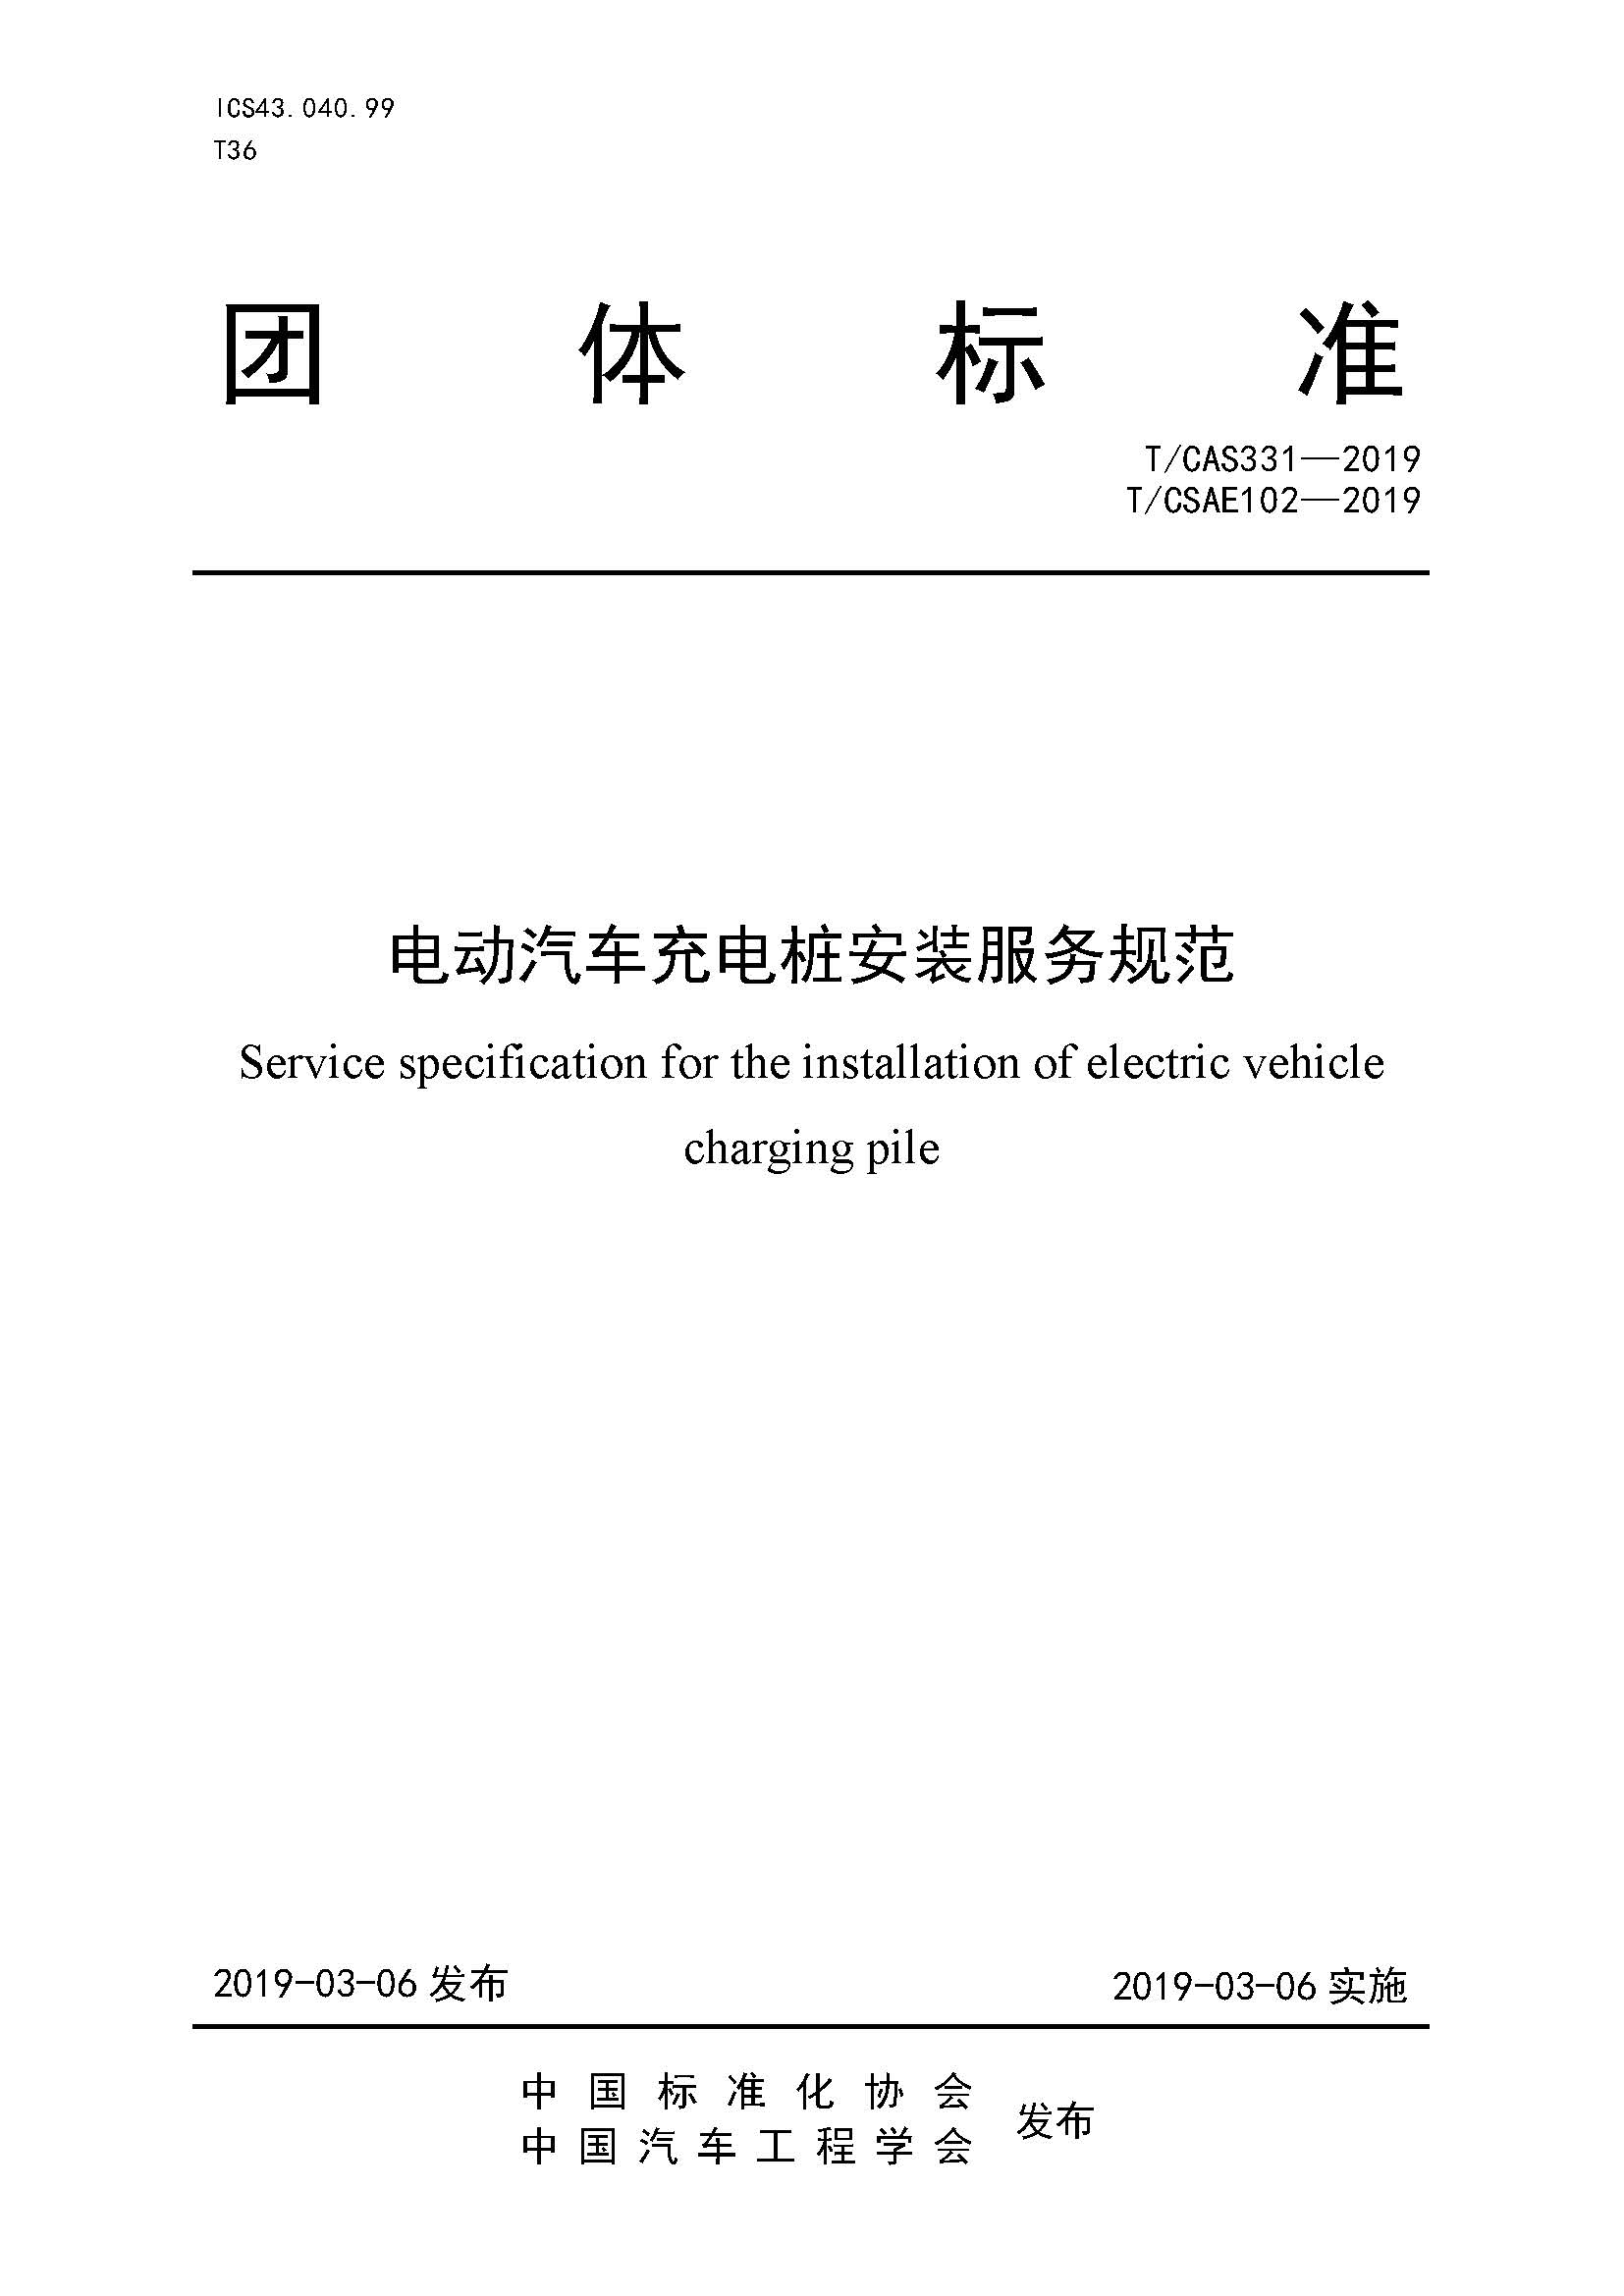 社证字第4348号-《电动汽车充电桩安装服务规范》-TCSAE 102—2019（现行）_页面_01.jpg